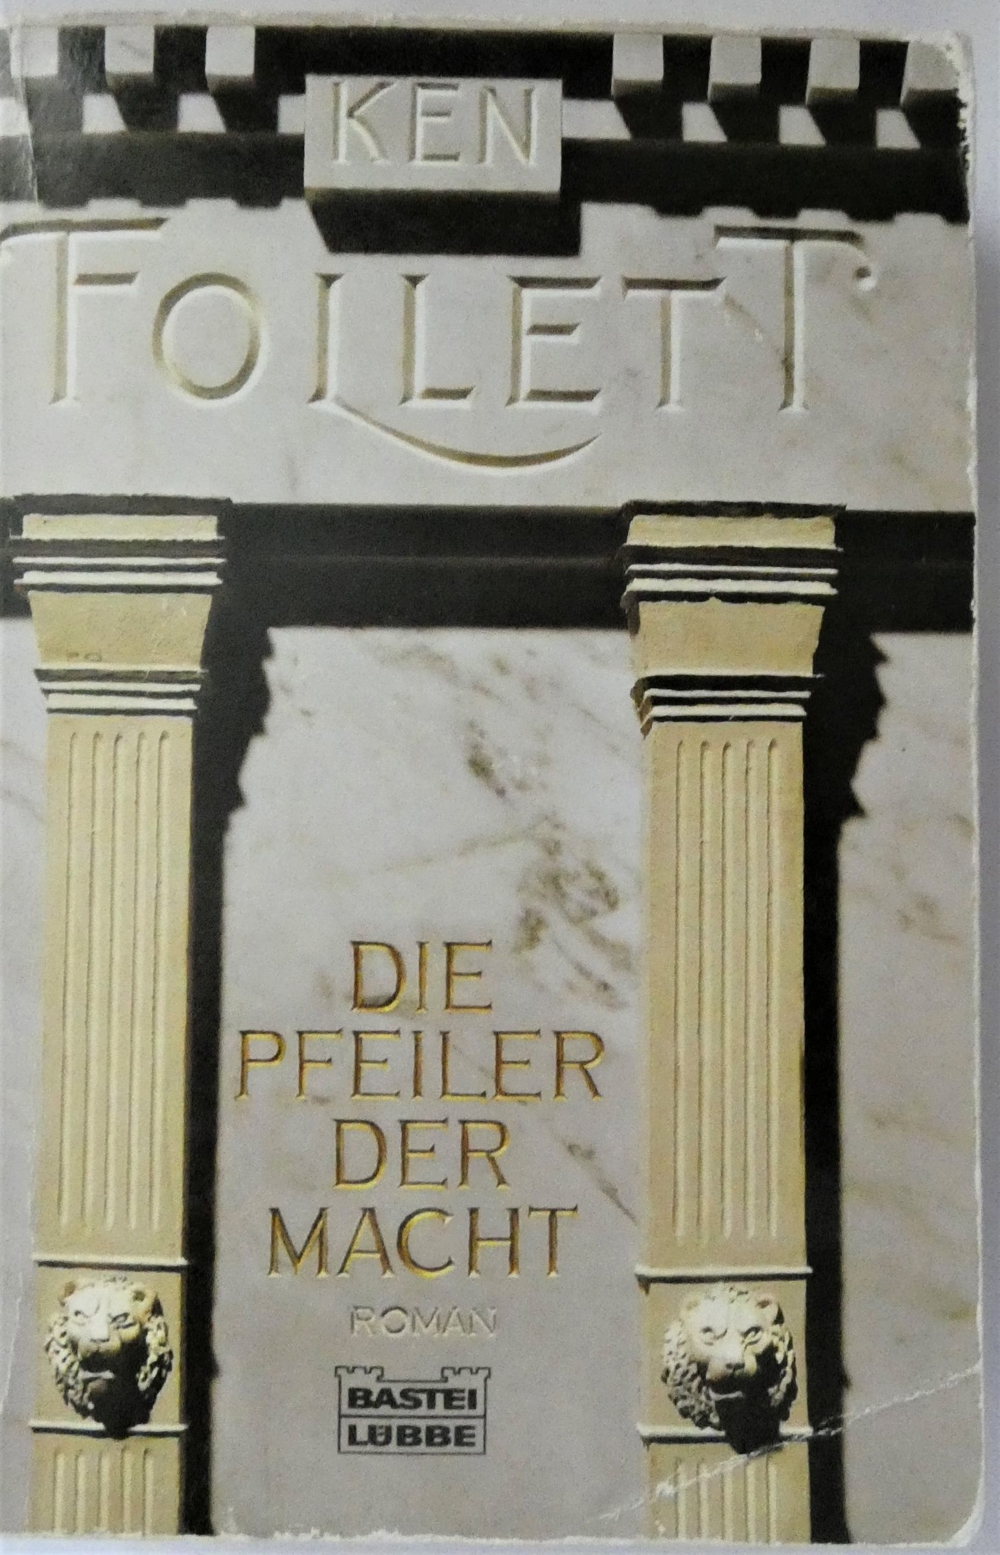 Die Pfeiler der Macht / Ken Follett /ISBN 3-404-12501-0